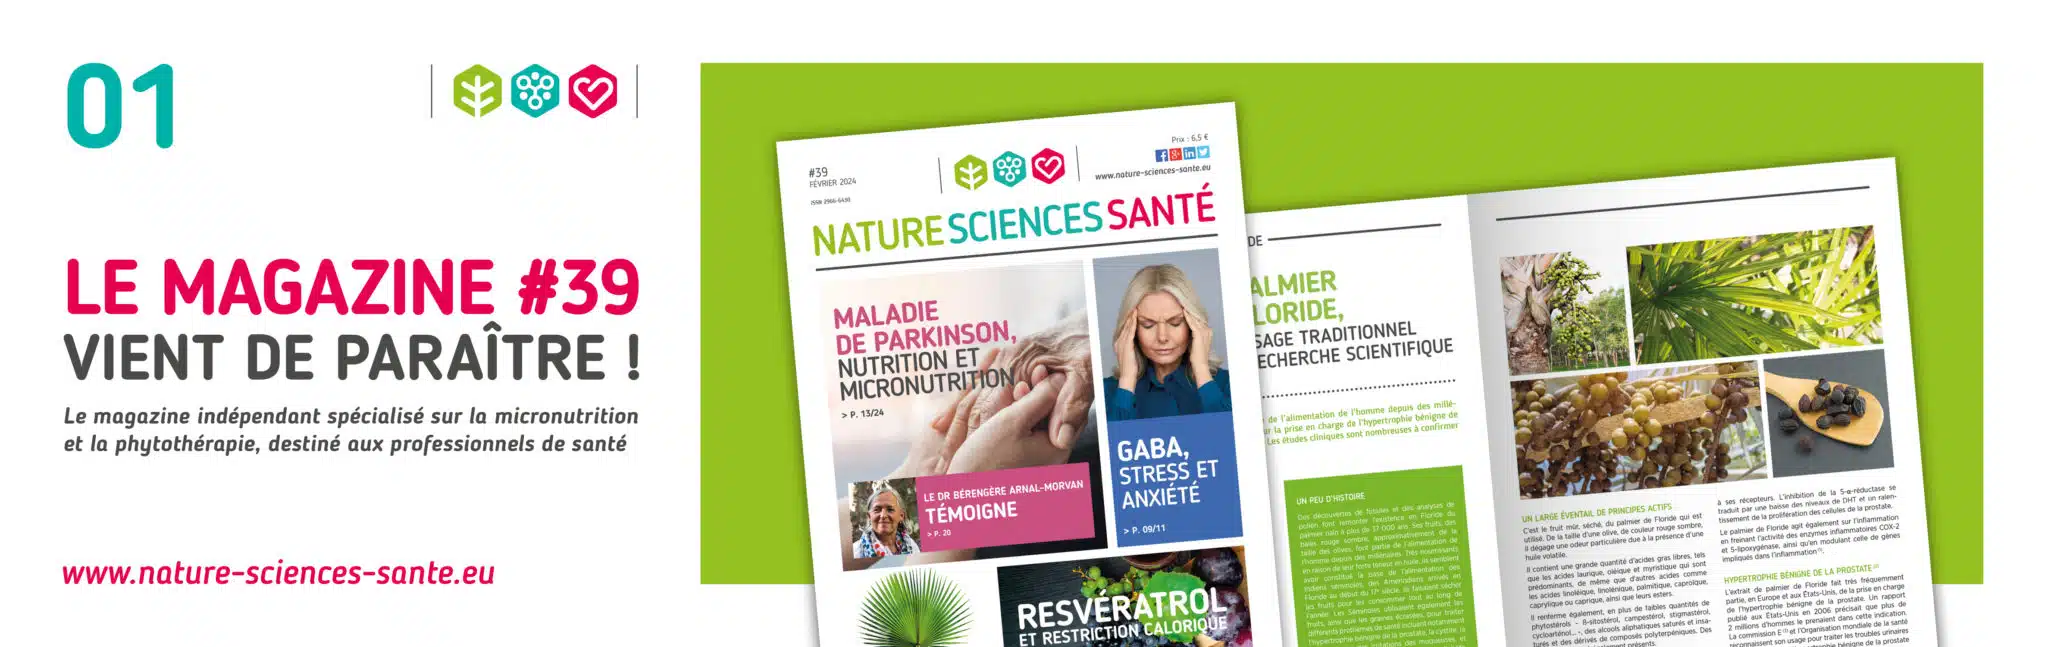 Découvrez le nouveau numéro du Magazine Nature Sciences Santé : le #39